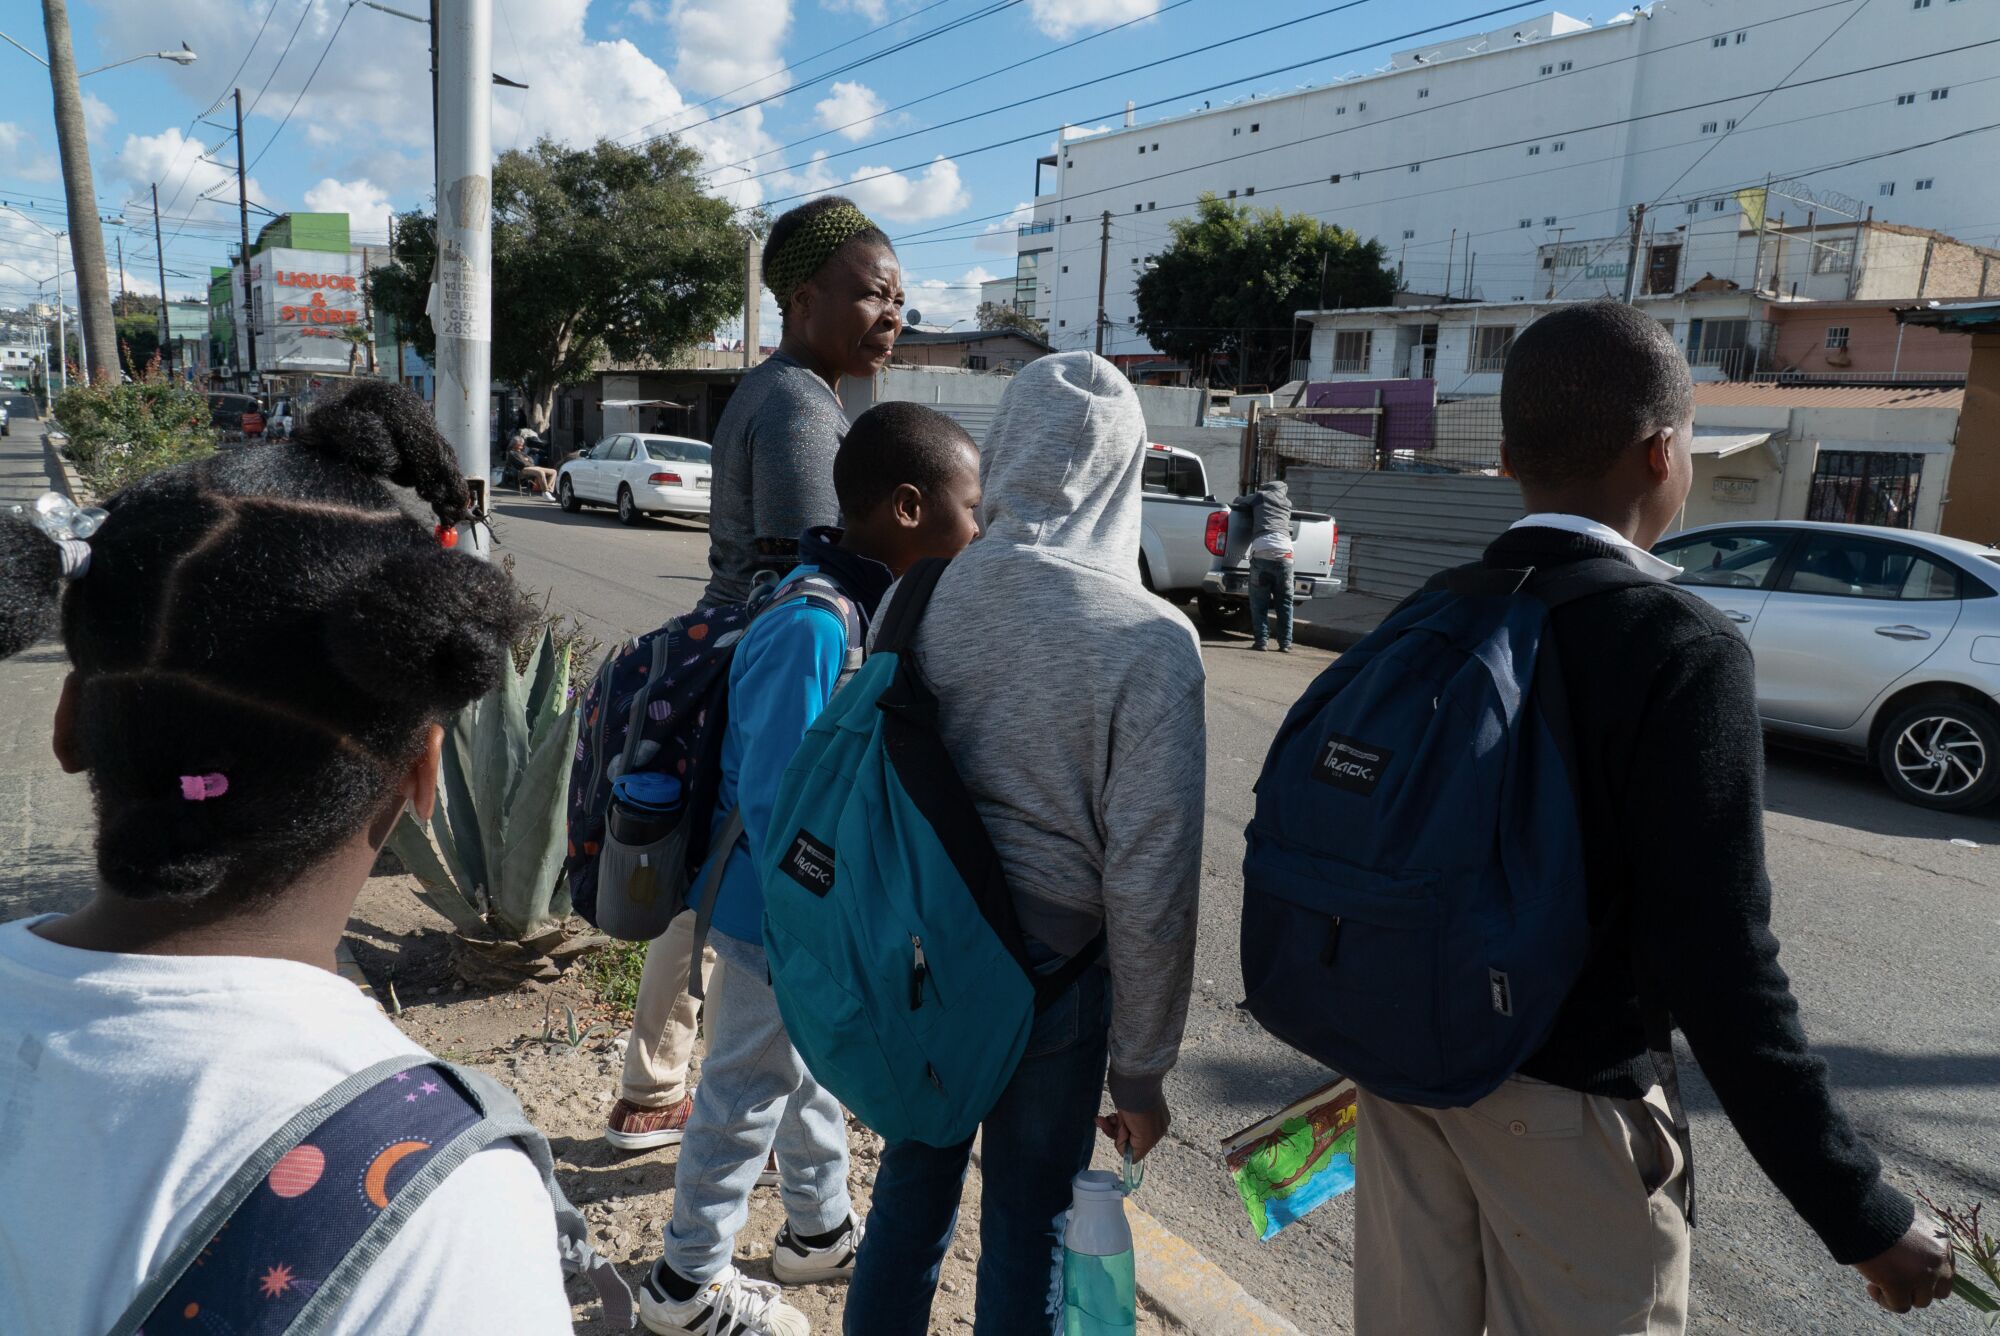 Antoinette Darelus, acompaña a sus hijos y a dos vecinos a la escuela en el centro de Tijuana.